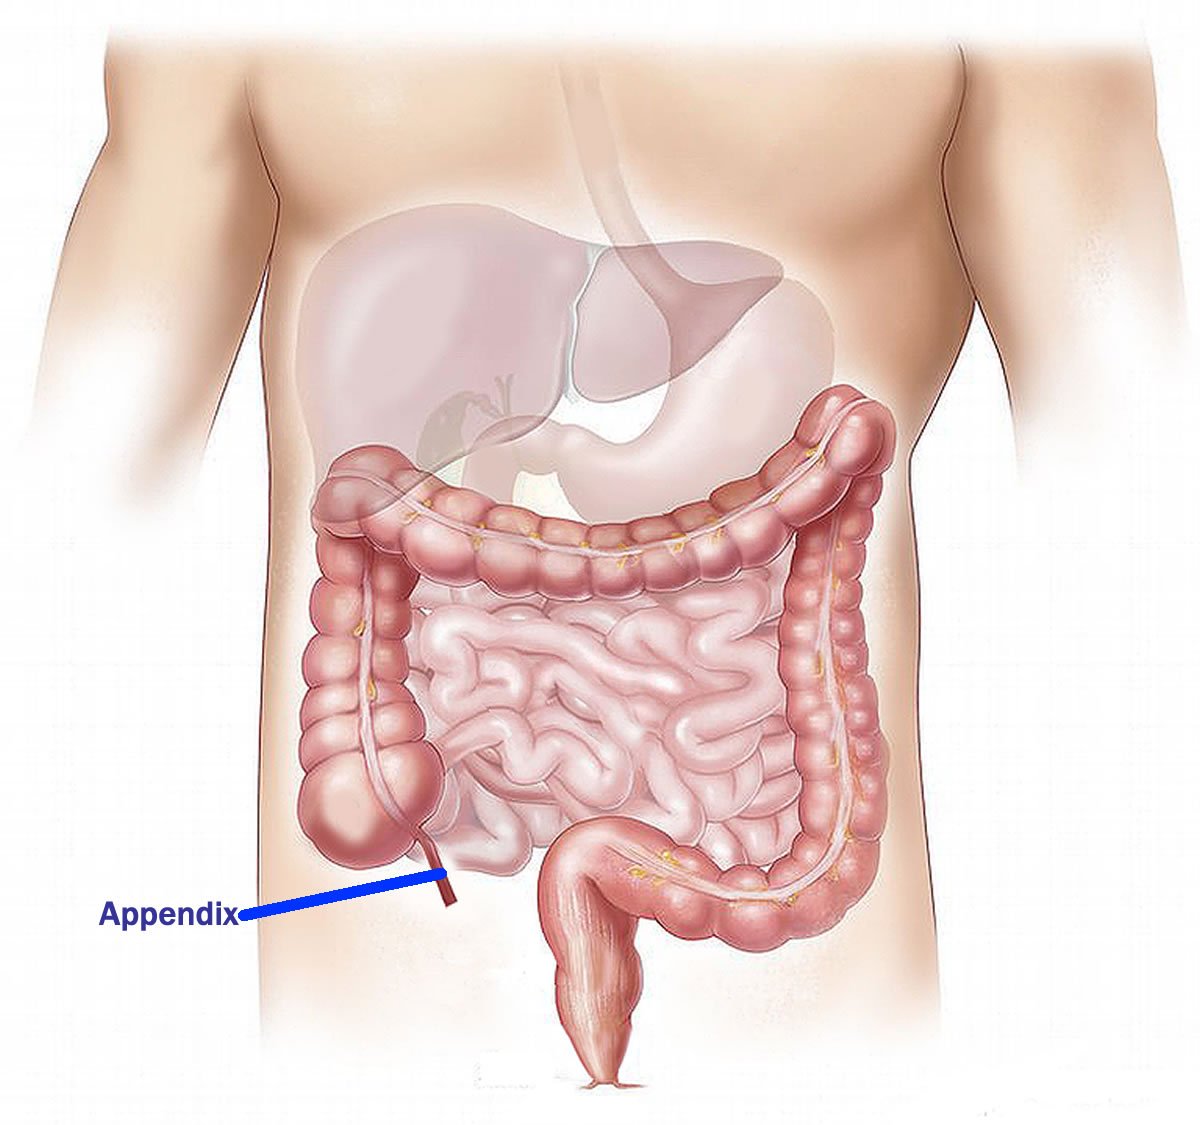 Appendix Chronic Appendicitis: